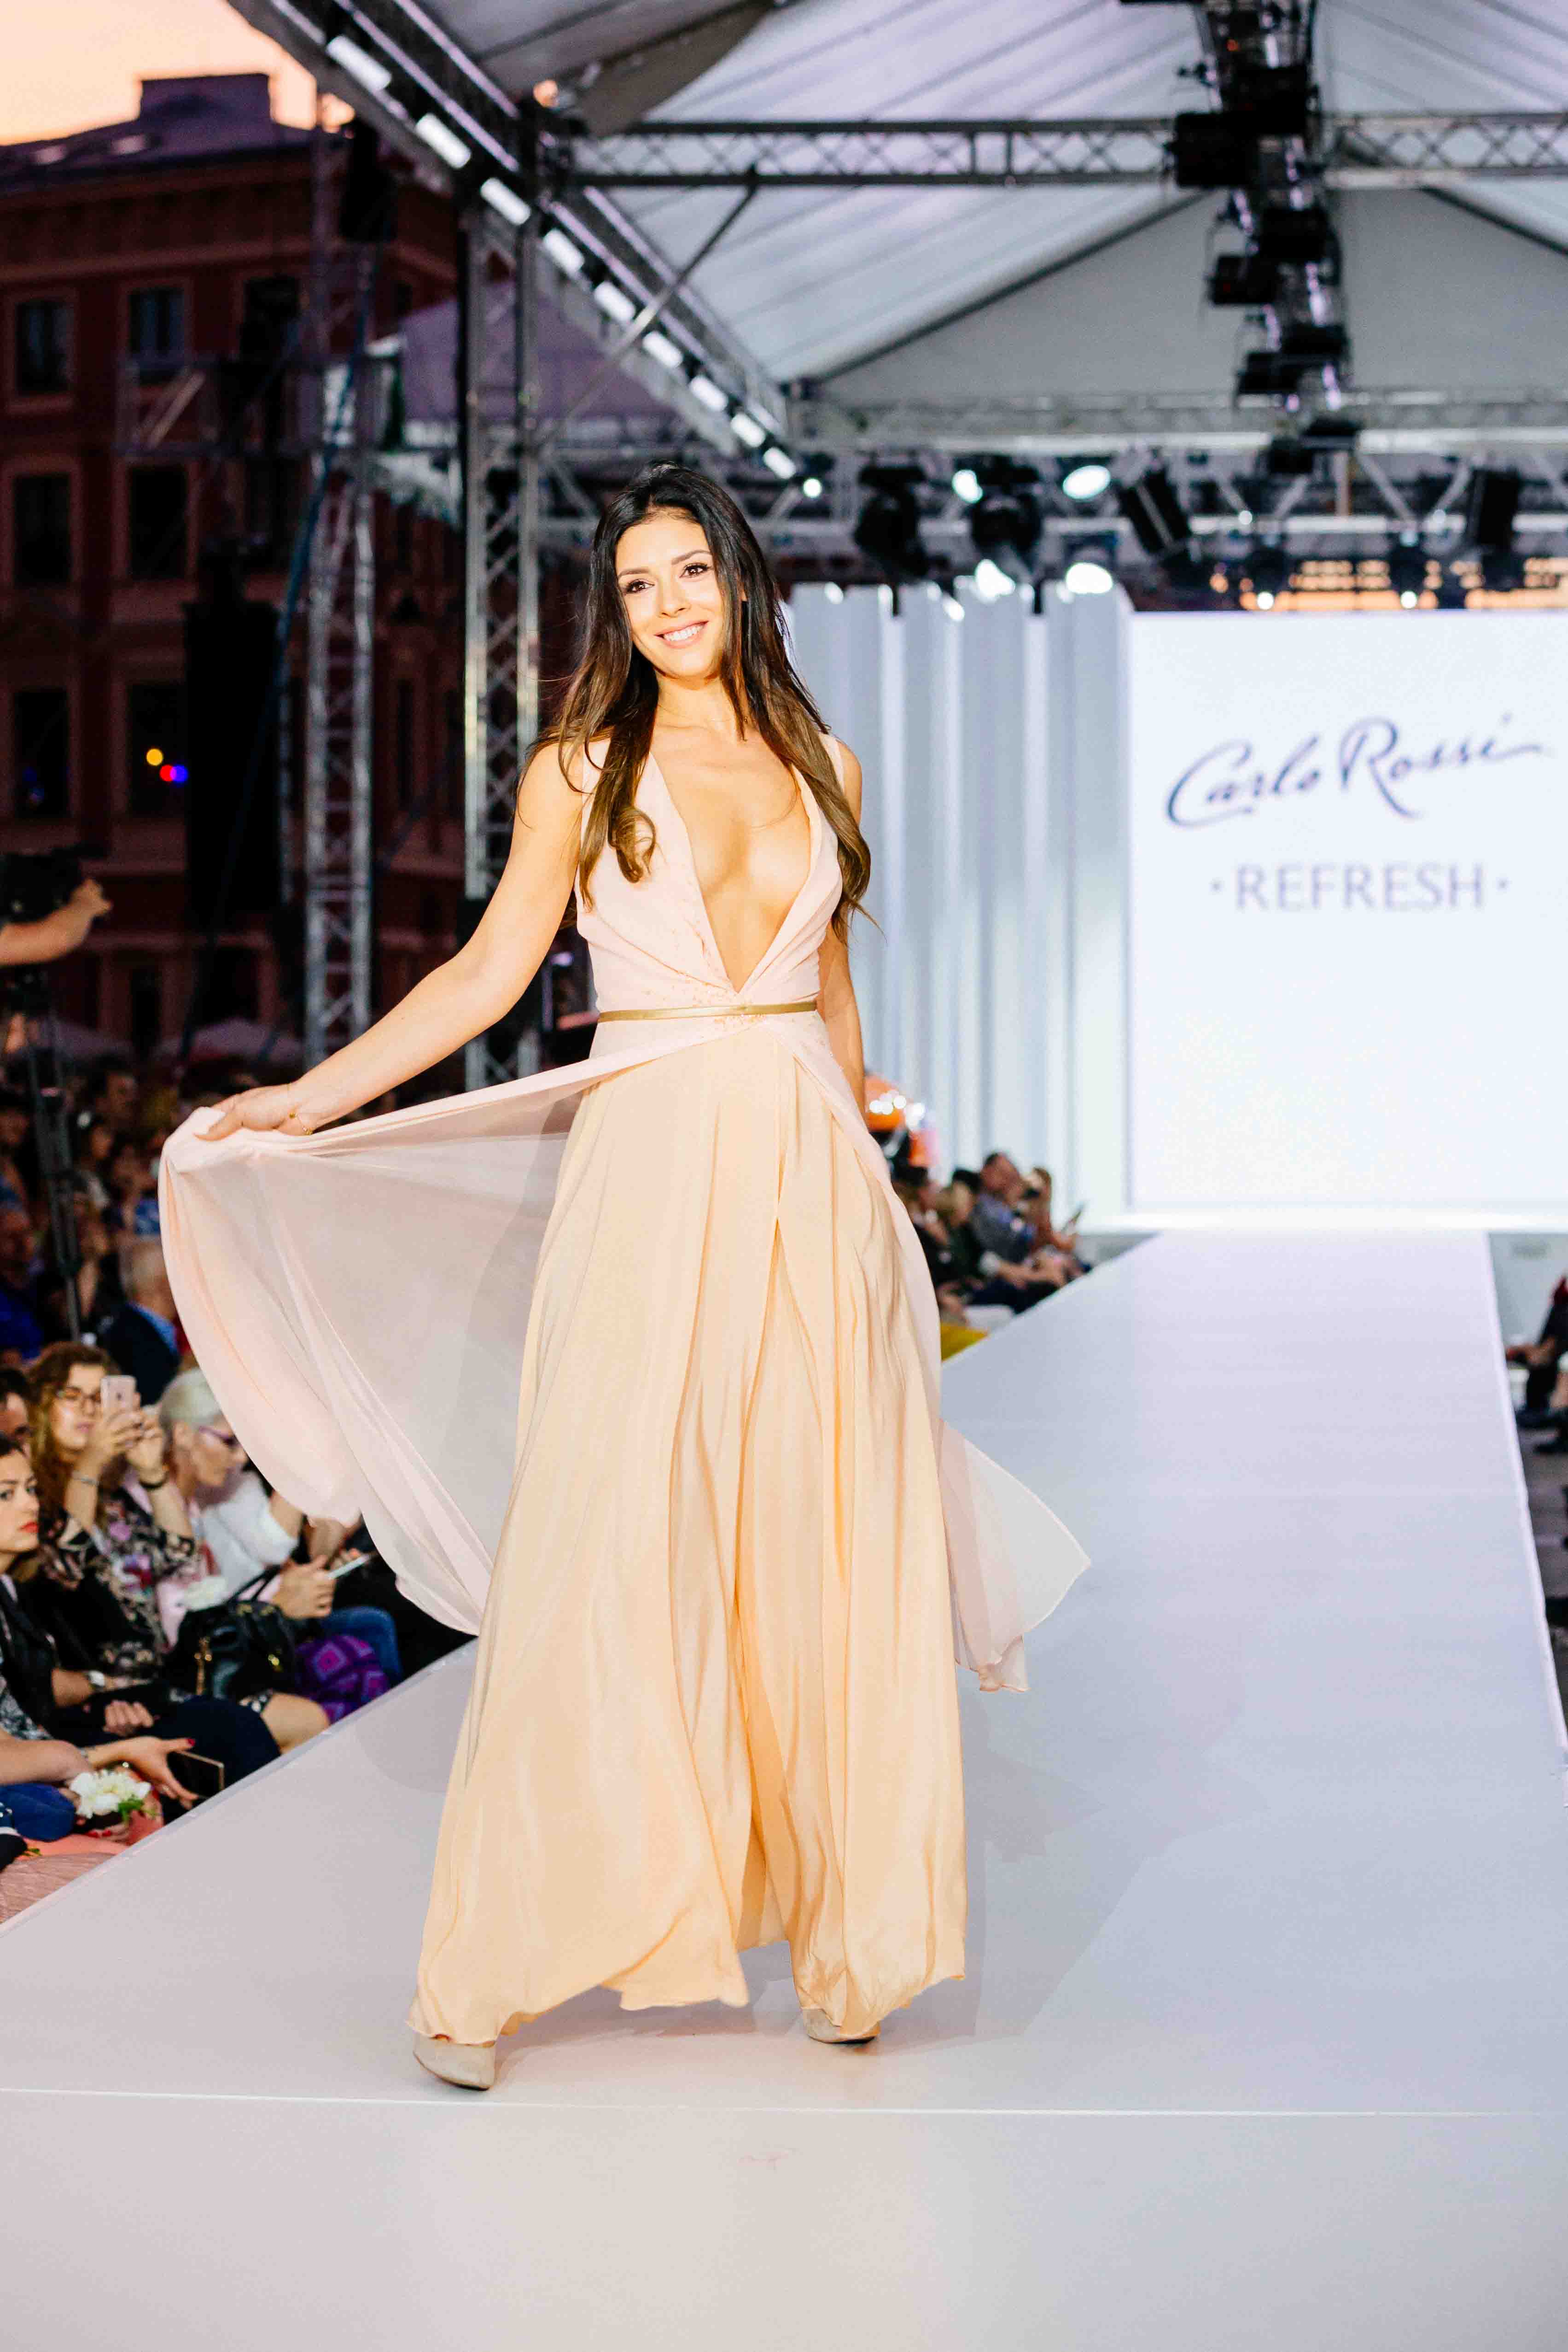 BlogStar: Klaudia Halejcio w zjawiskowej sukni inspirowanej Carlo Rossi Refresh - BlogStar.pl